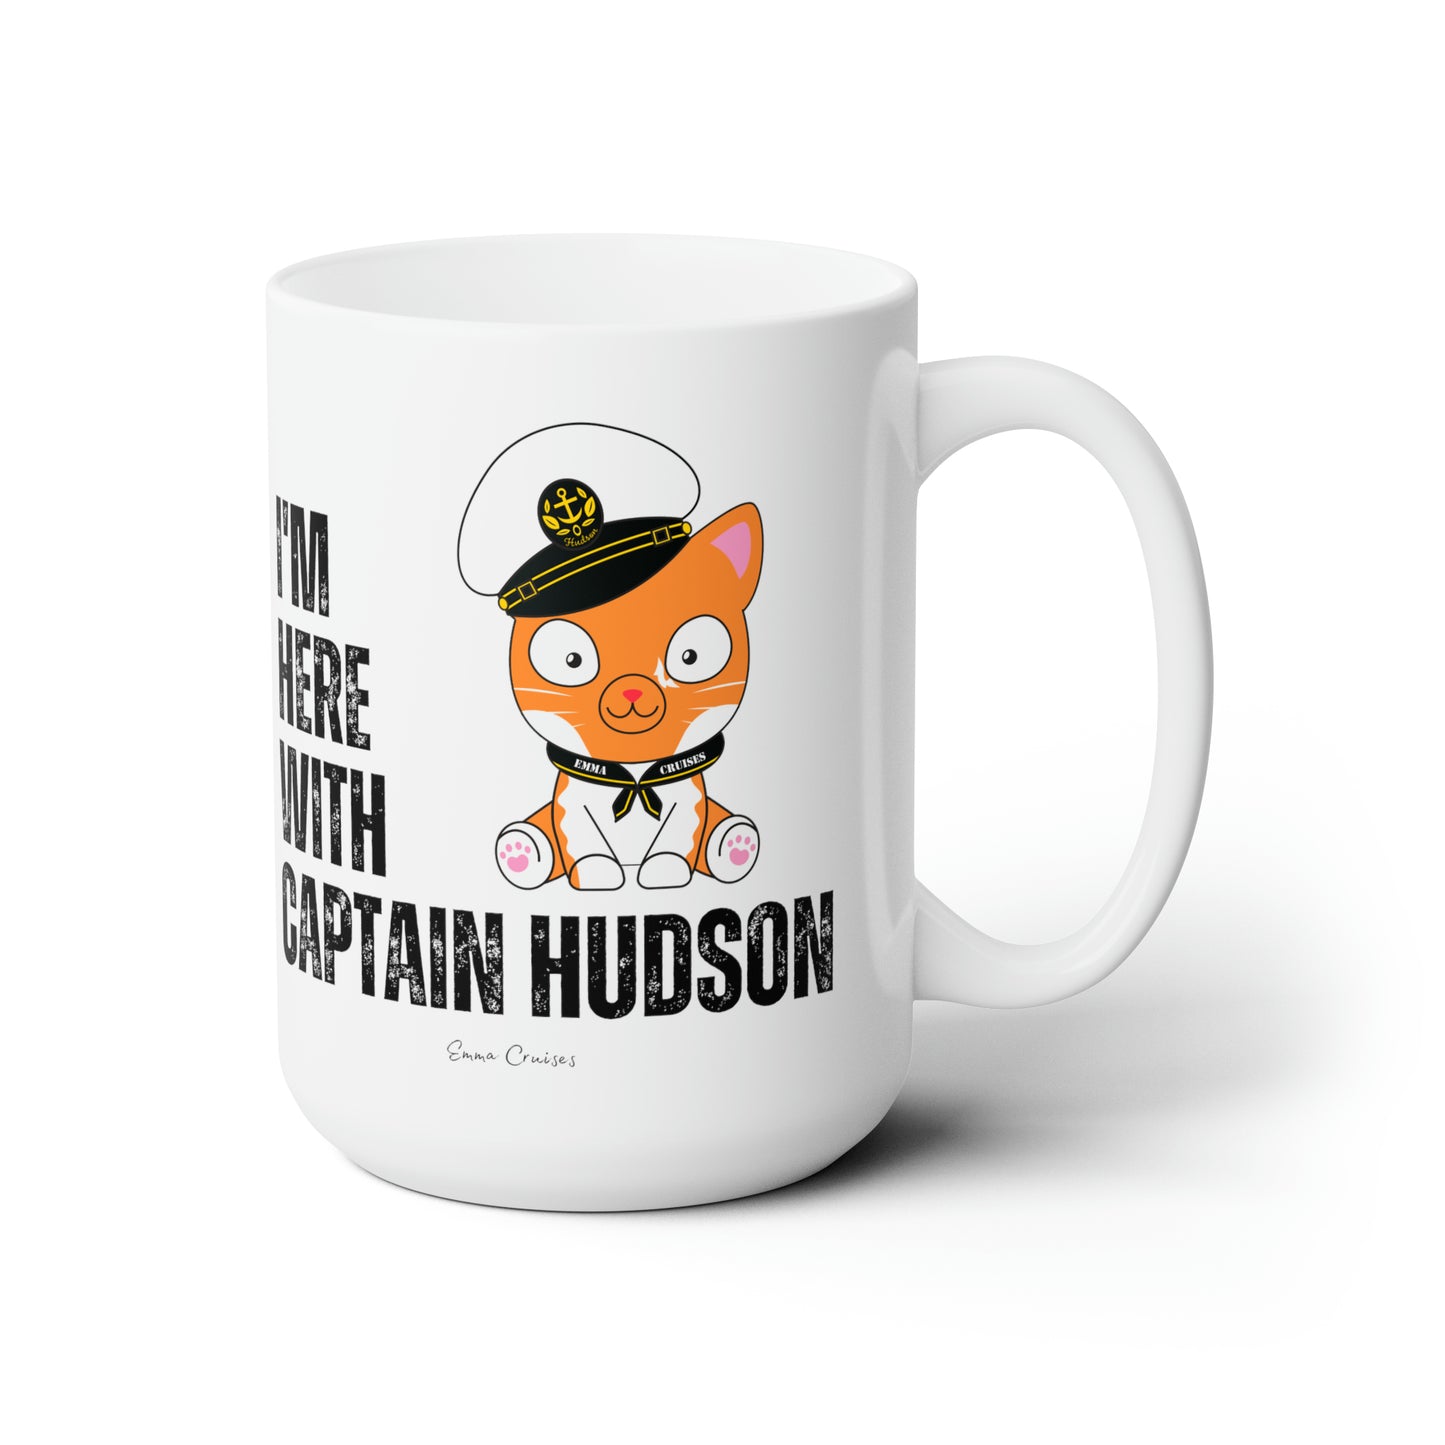 I'm With Captain Hudson - Ceramic Mug